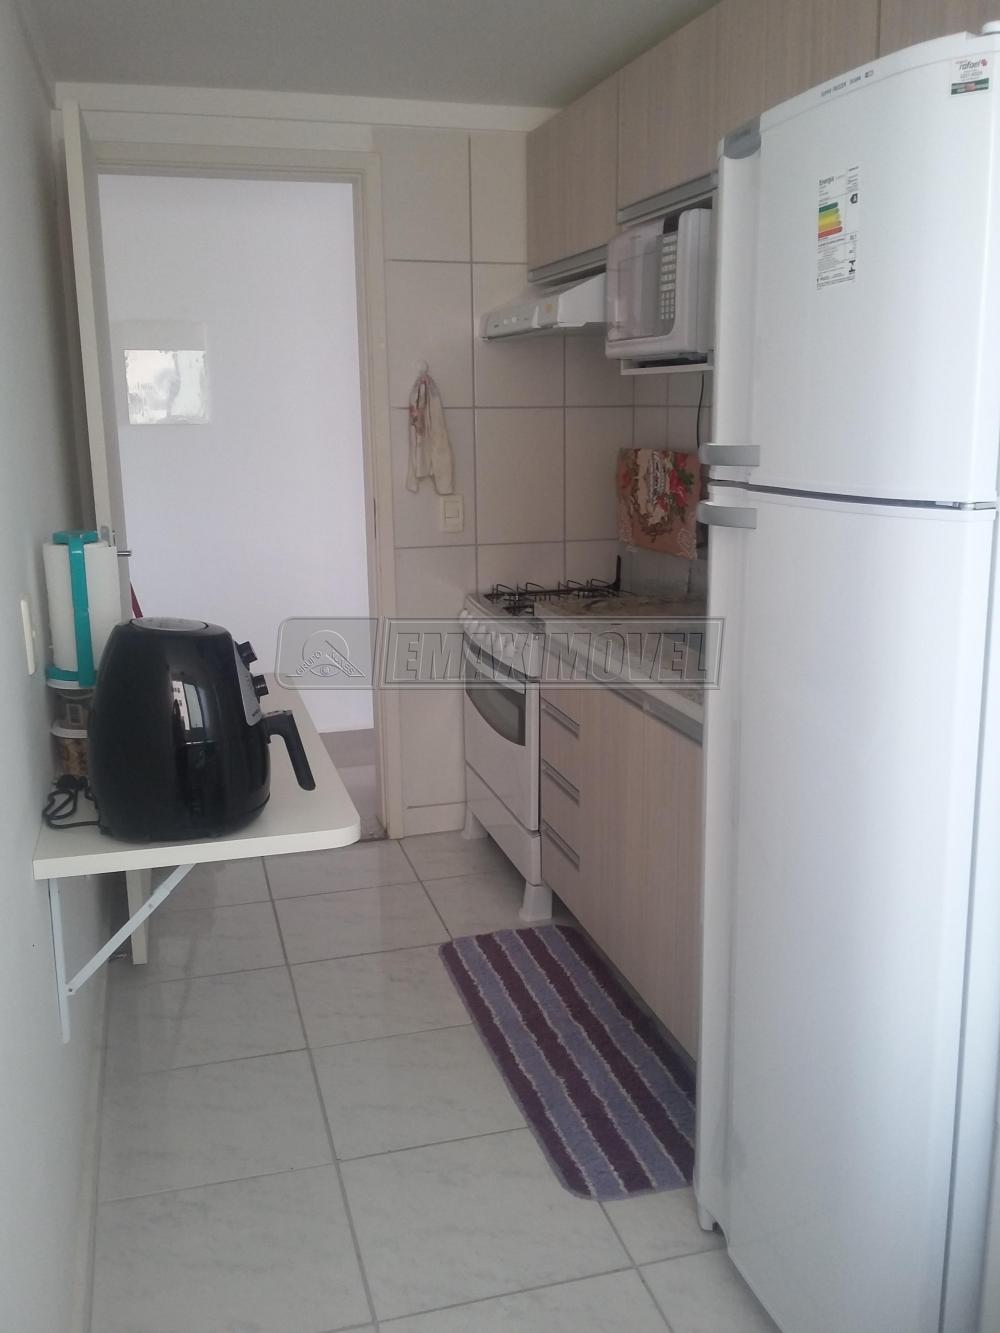 Comprar Apartamento / Padrão em Sorocaba R$ 190.000,00 - Foto 6